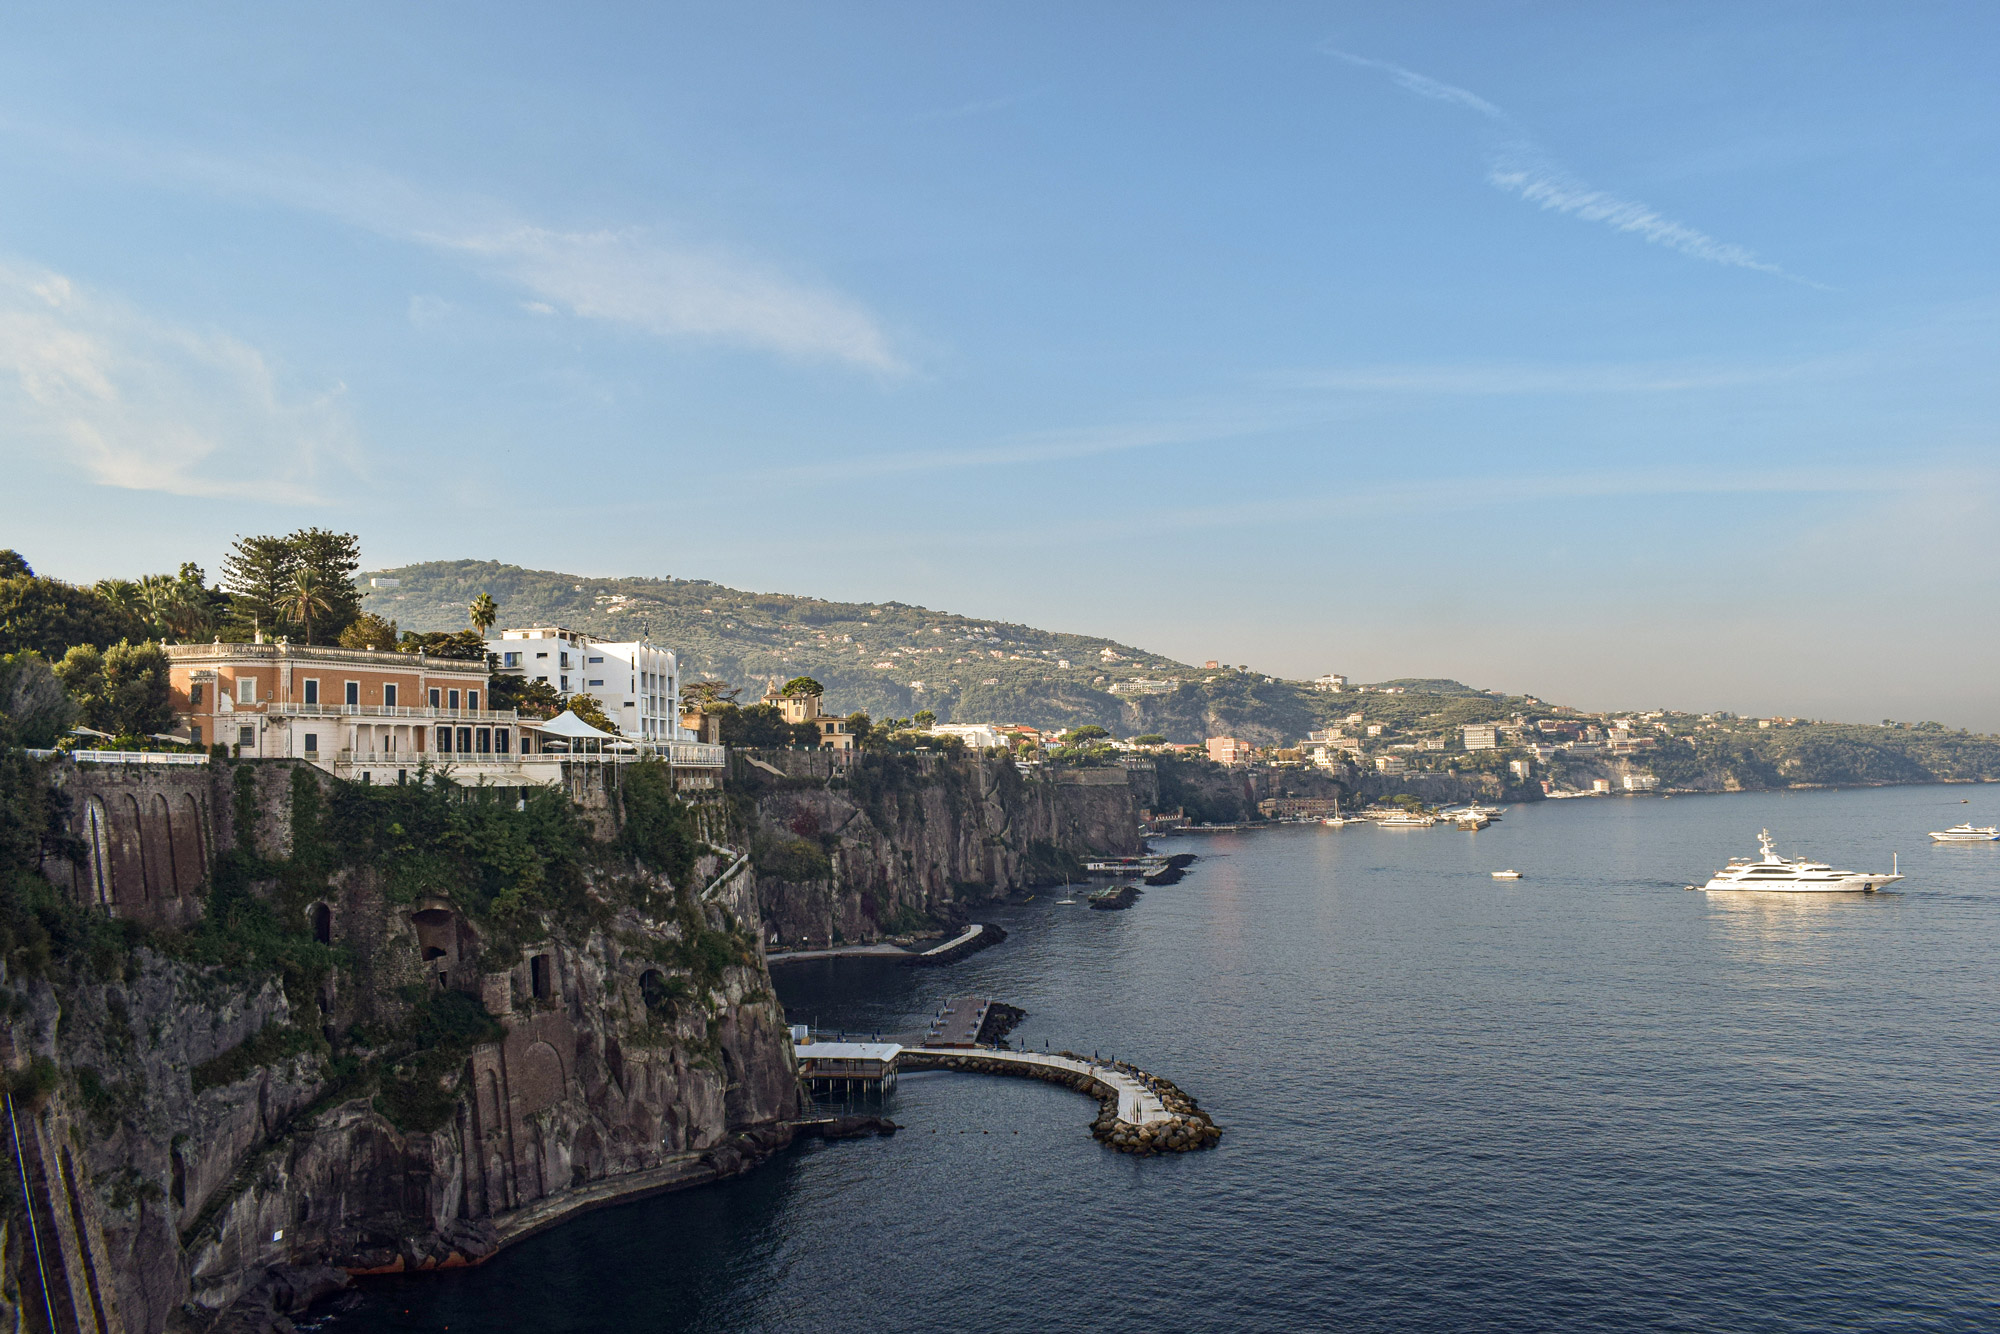 Hotel Parco dei Principi. In equilibrio perfetto tra architettura e natura, il capolavoro di Gio Ponti domina il mare dall’alto di un imponente spalto.